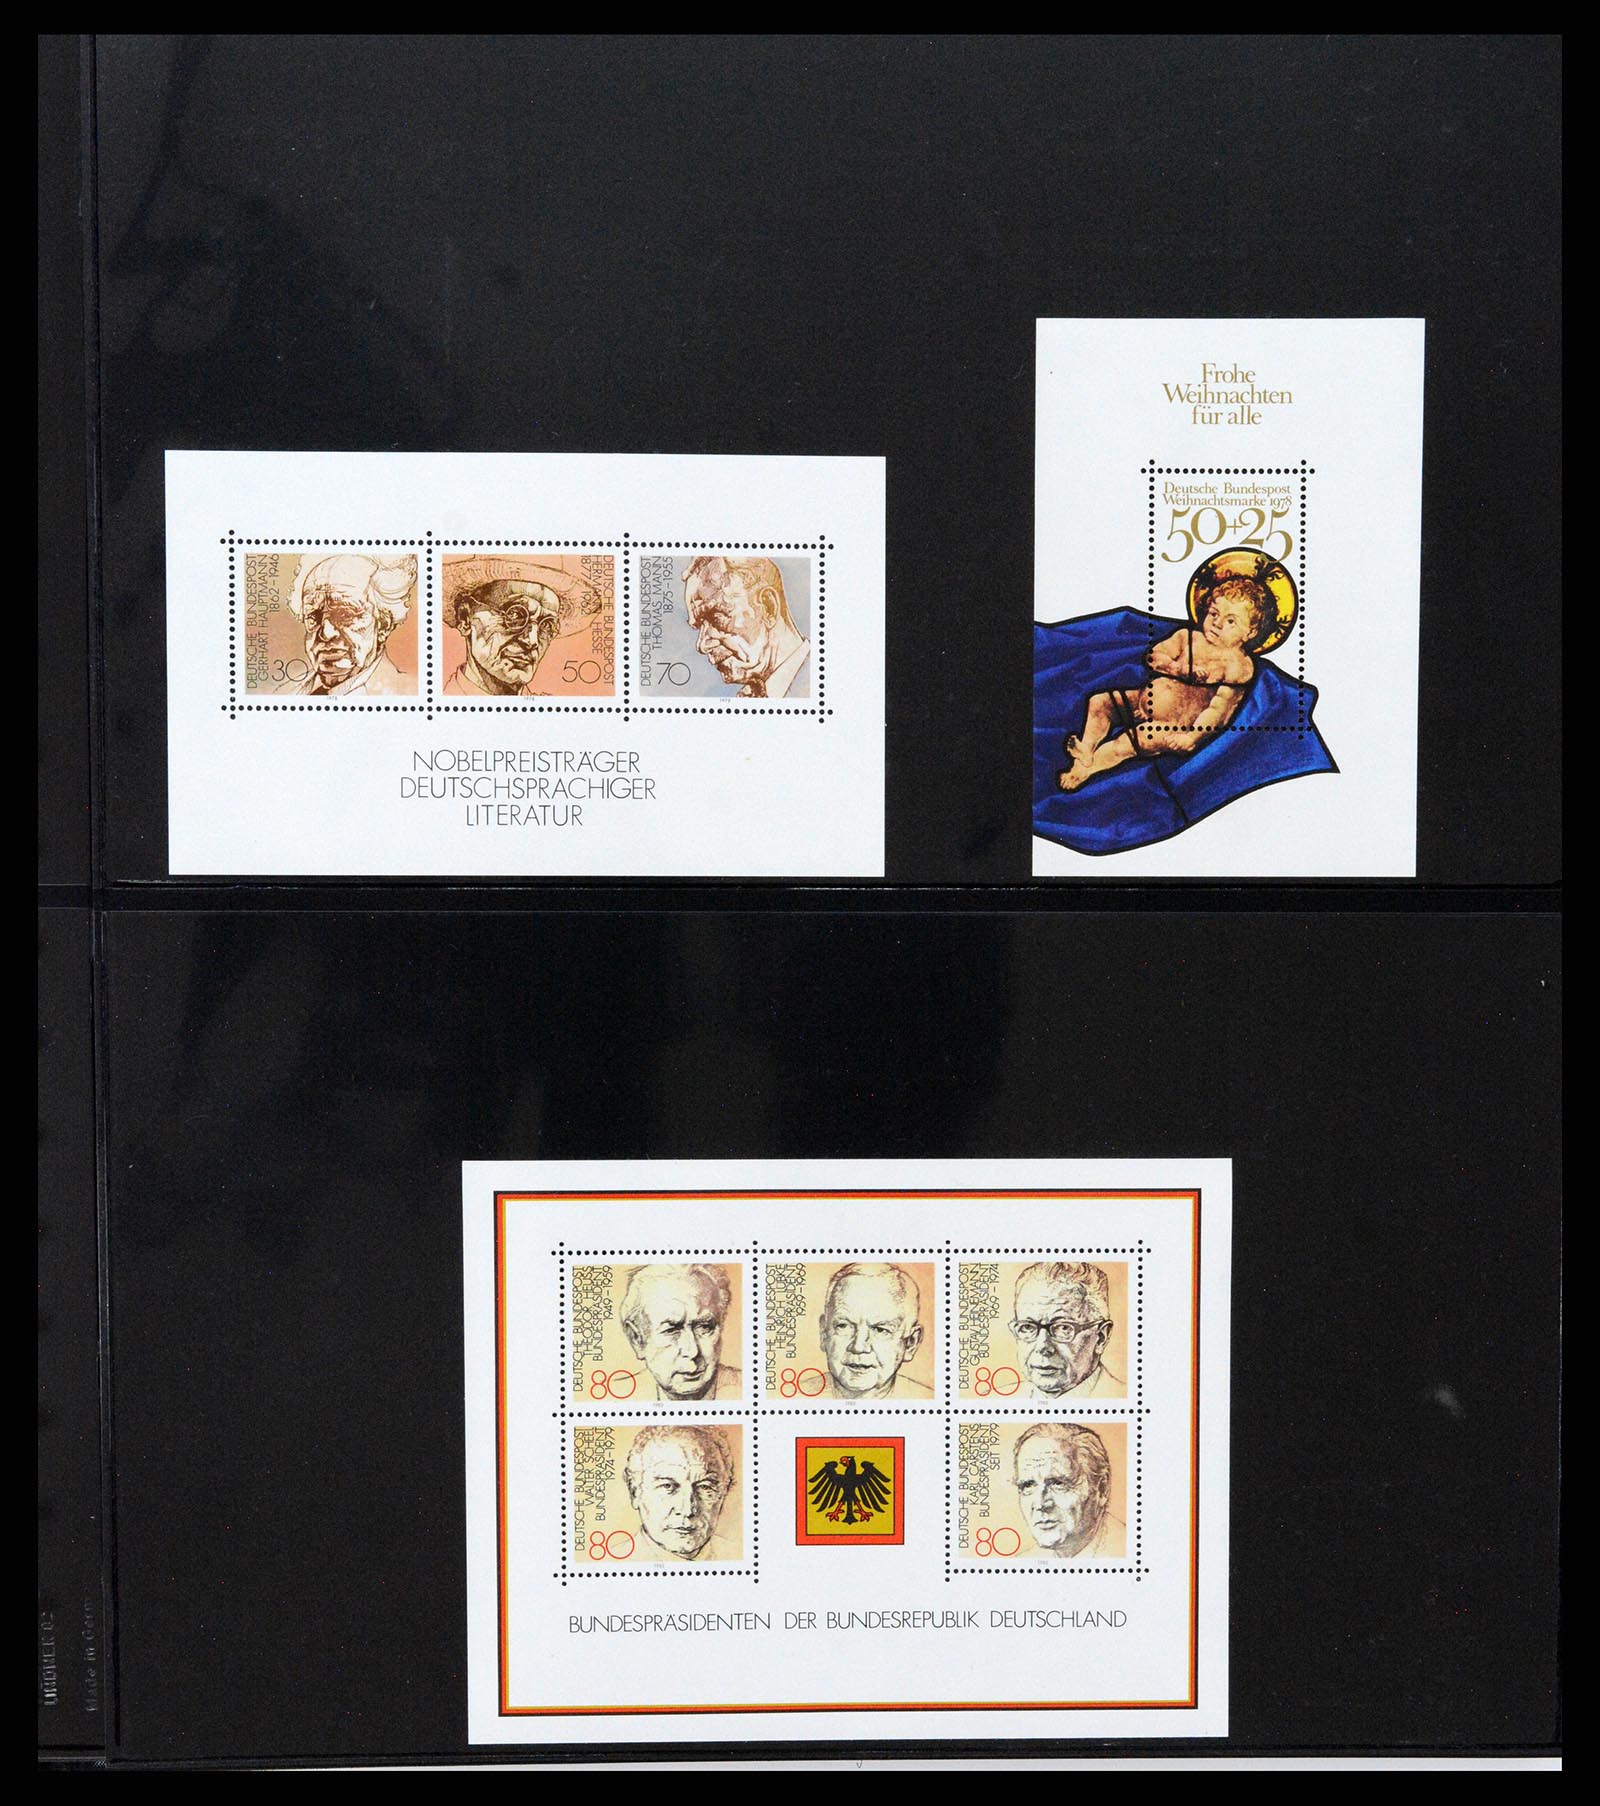 37345 036 - Stamp collection 37345 European countries souvenir sheets.